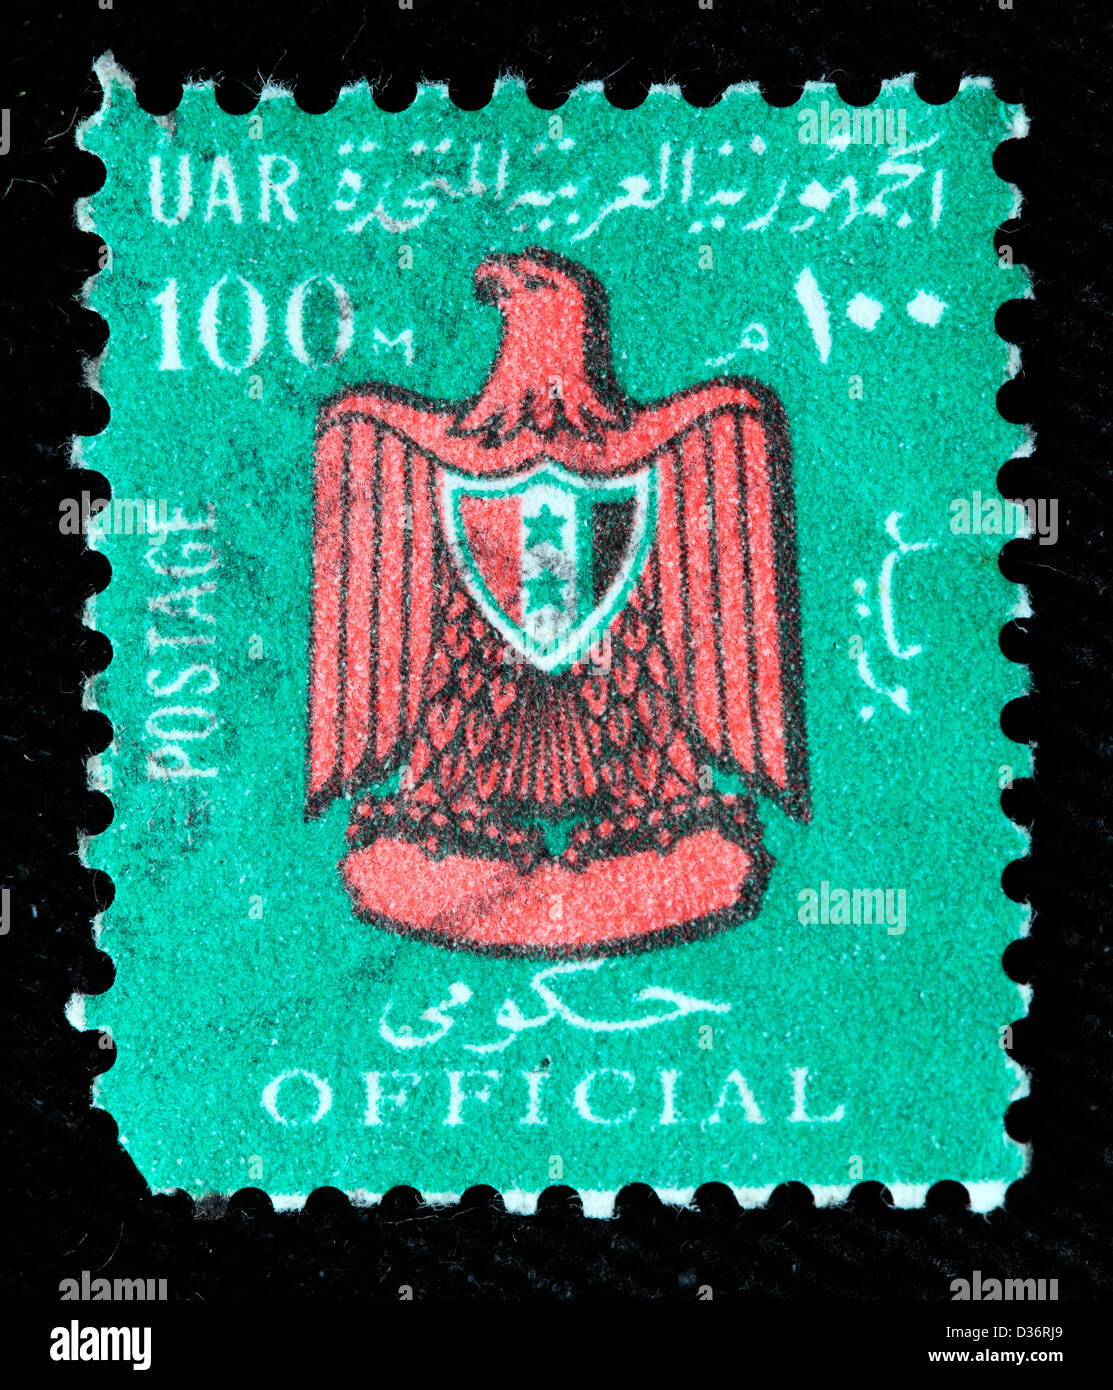 Las armas de la República Árabe Unida, sello, Egipto, 1960 Foto de stock